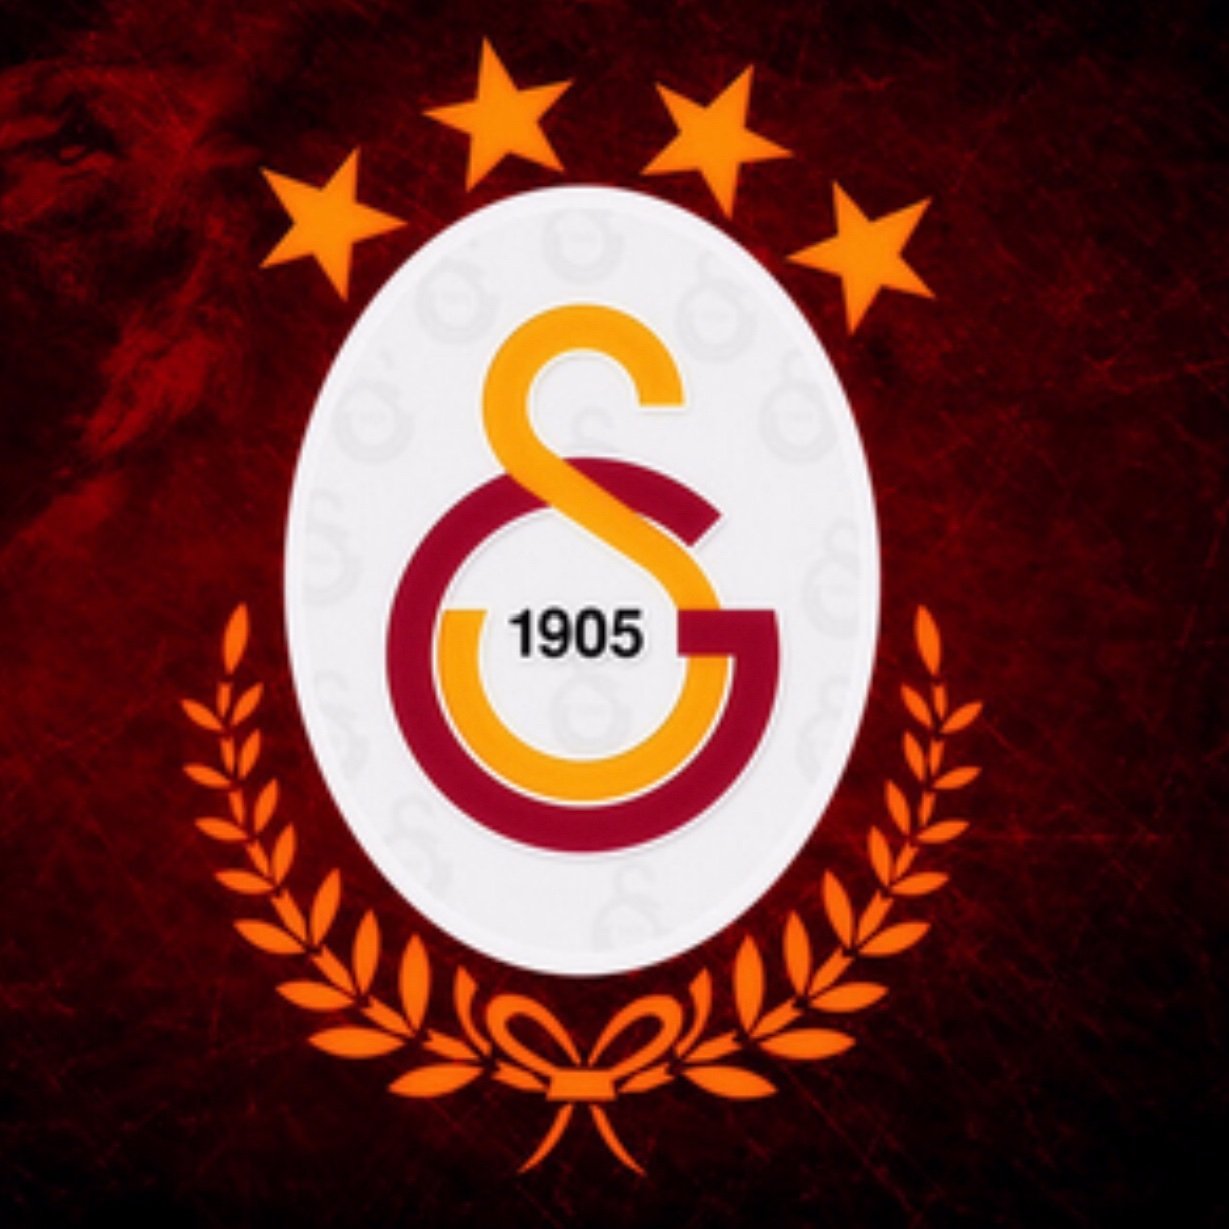 Hiçbir söze gerek yok çünkü Galatasaray’dan başka tutulacak takım yok.